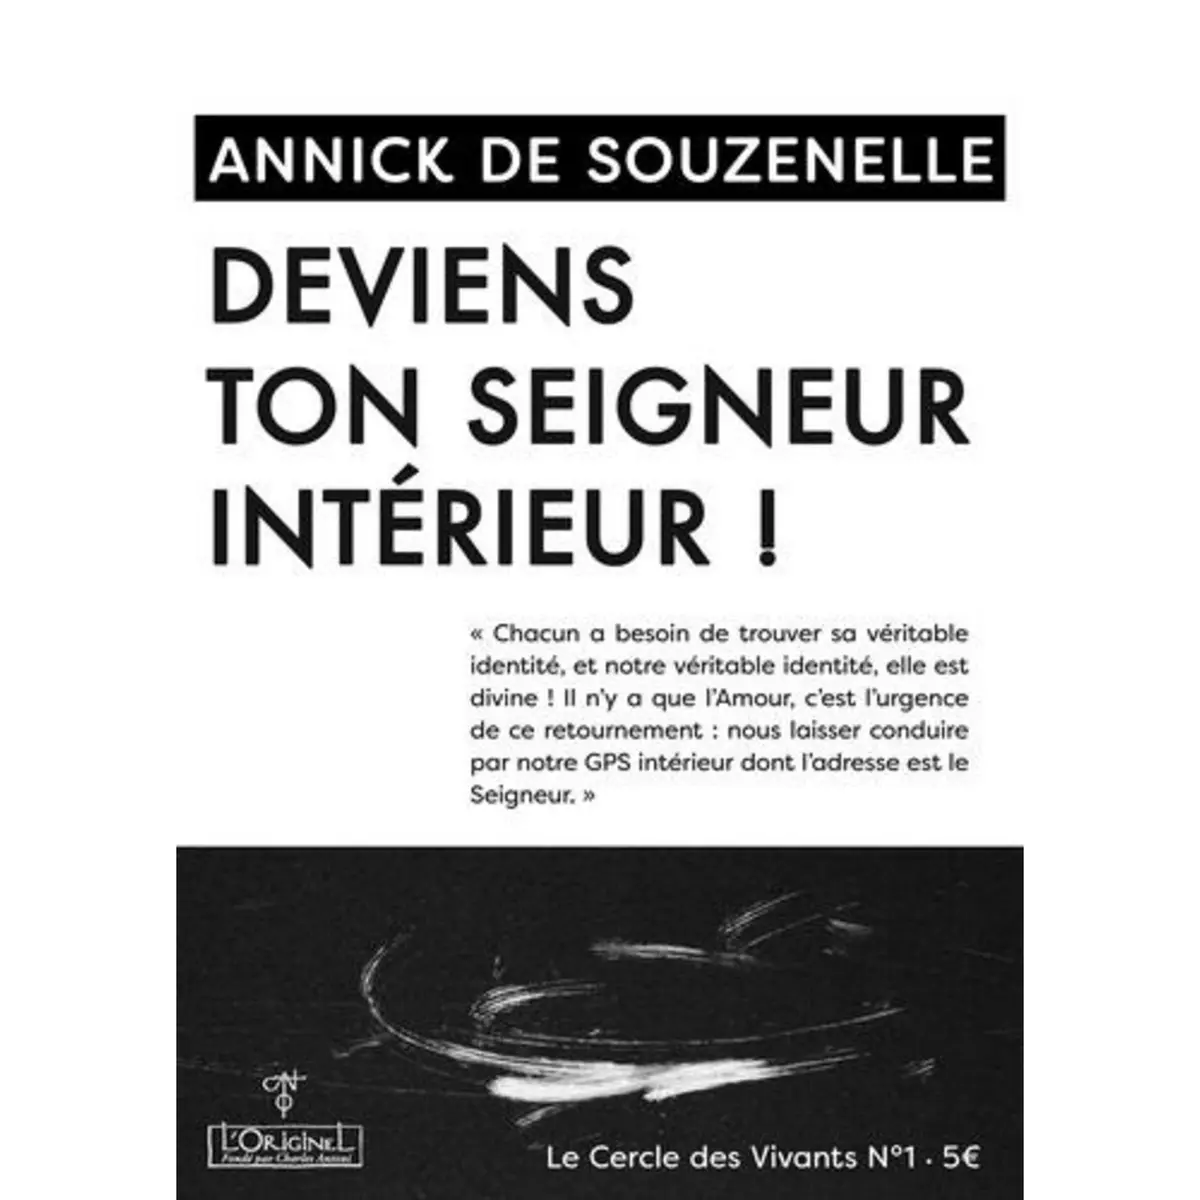  DEVIENS TON SEIGNEUR INTERIEUR !, Souzenelle Annick de